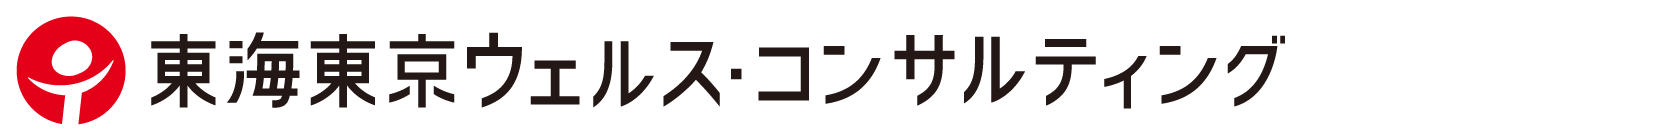 ウェルスコンサルティングのロゴ